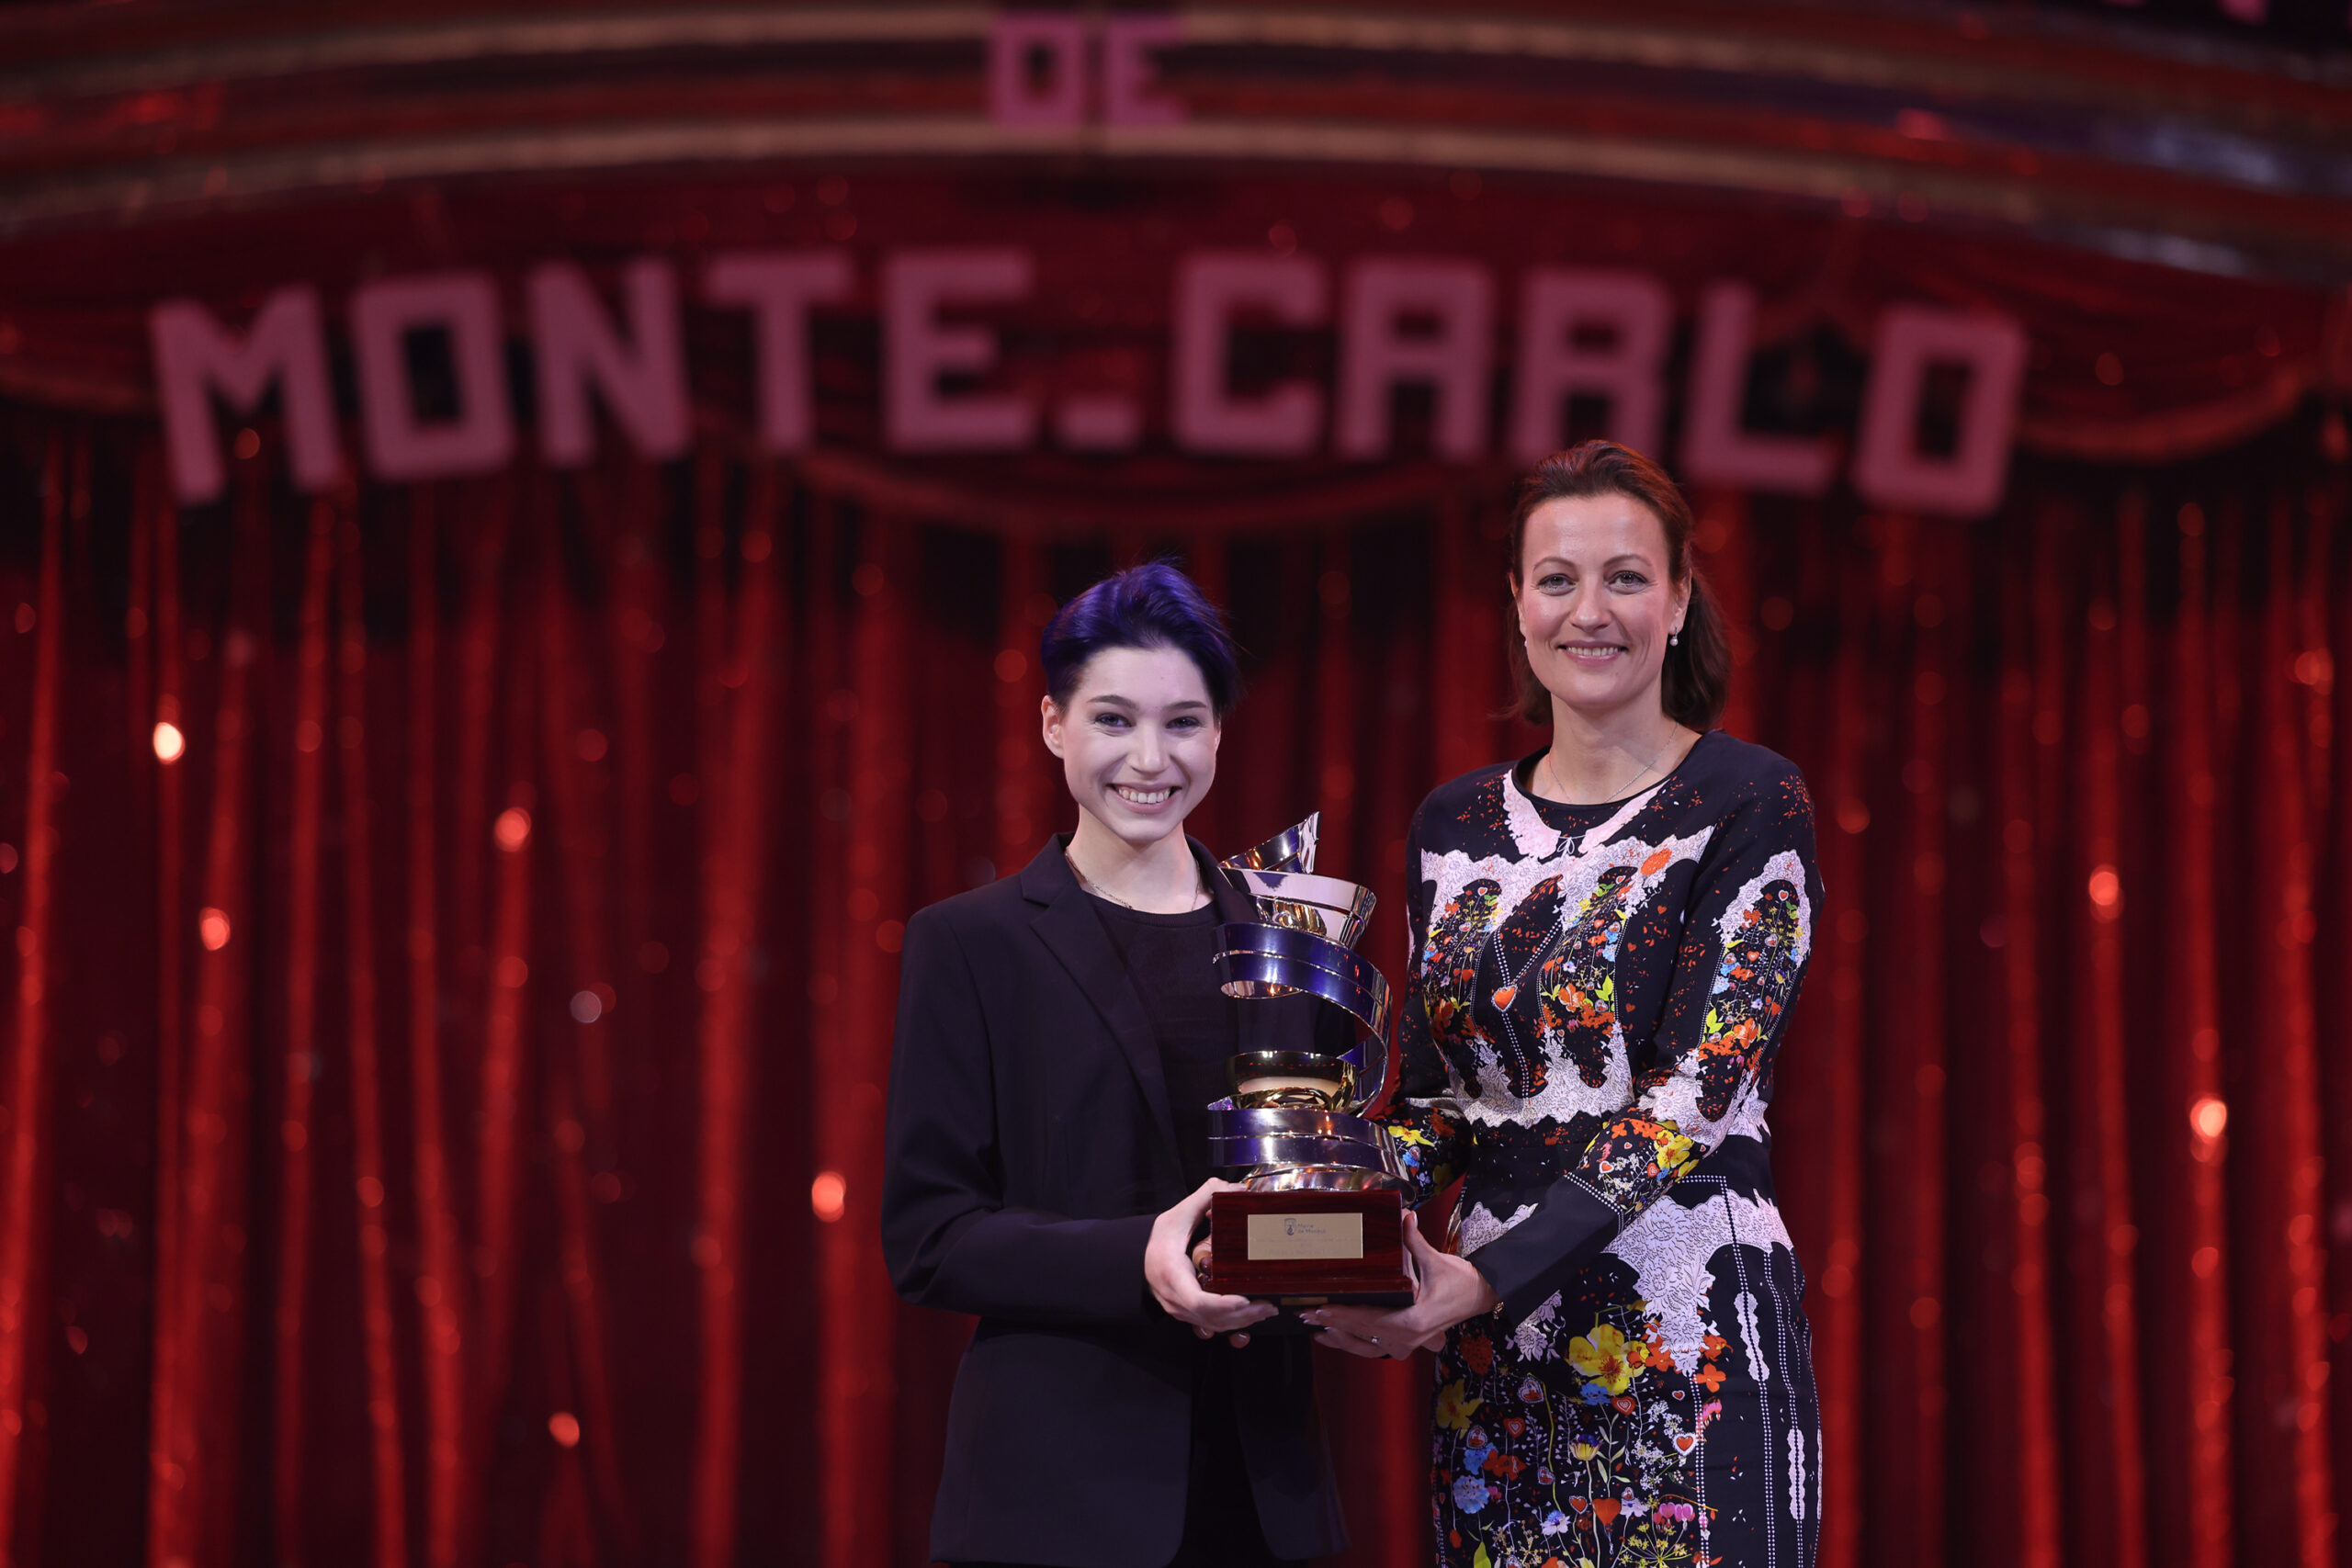 Prix de la Ville de Monaco - Viktoria Dziuba